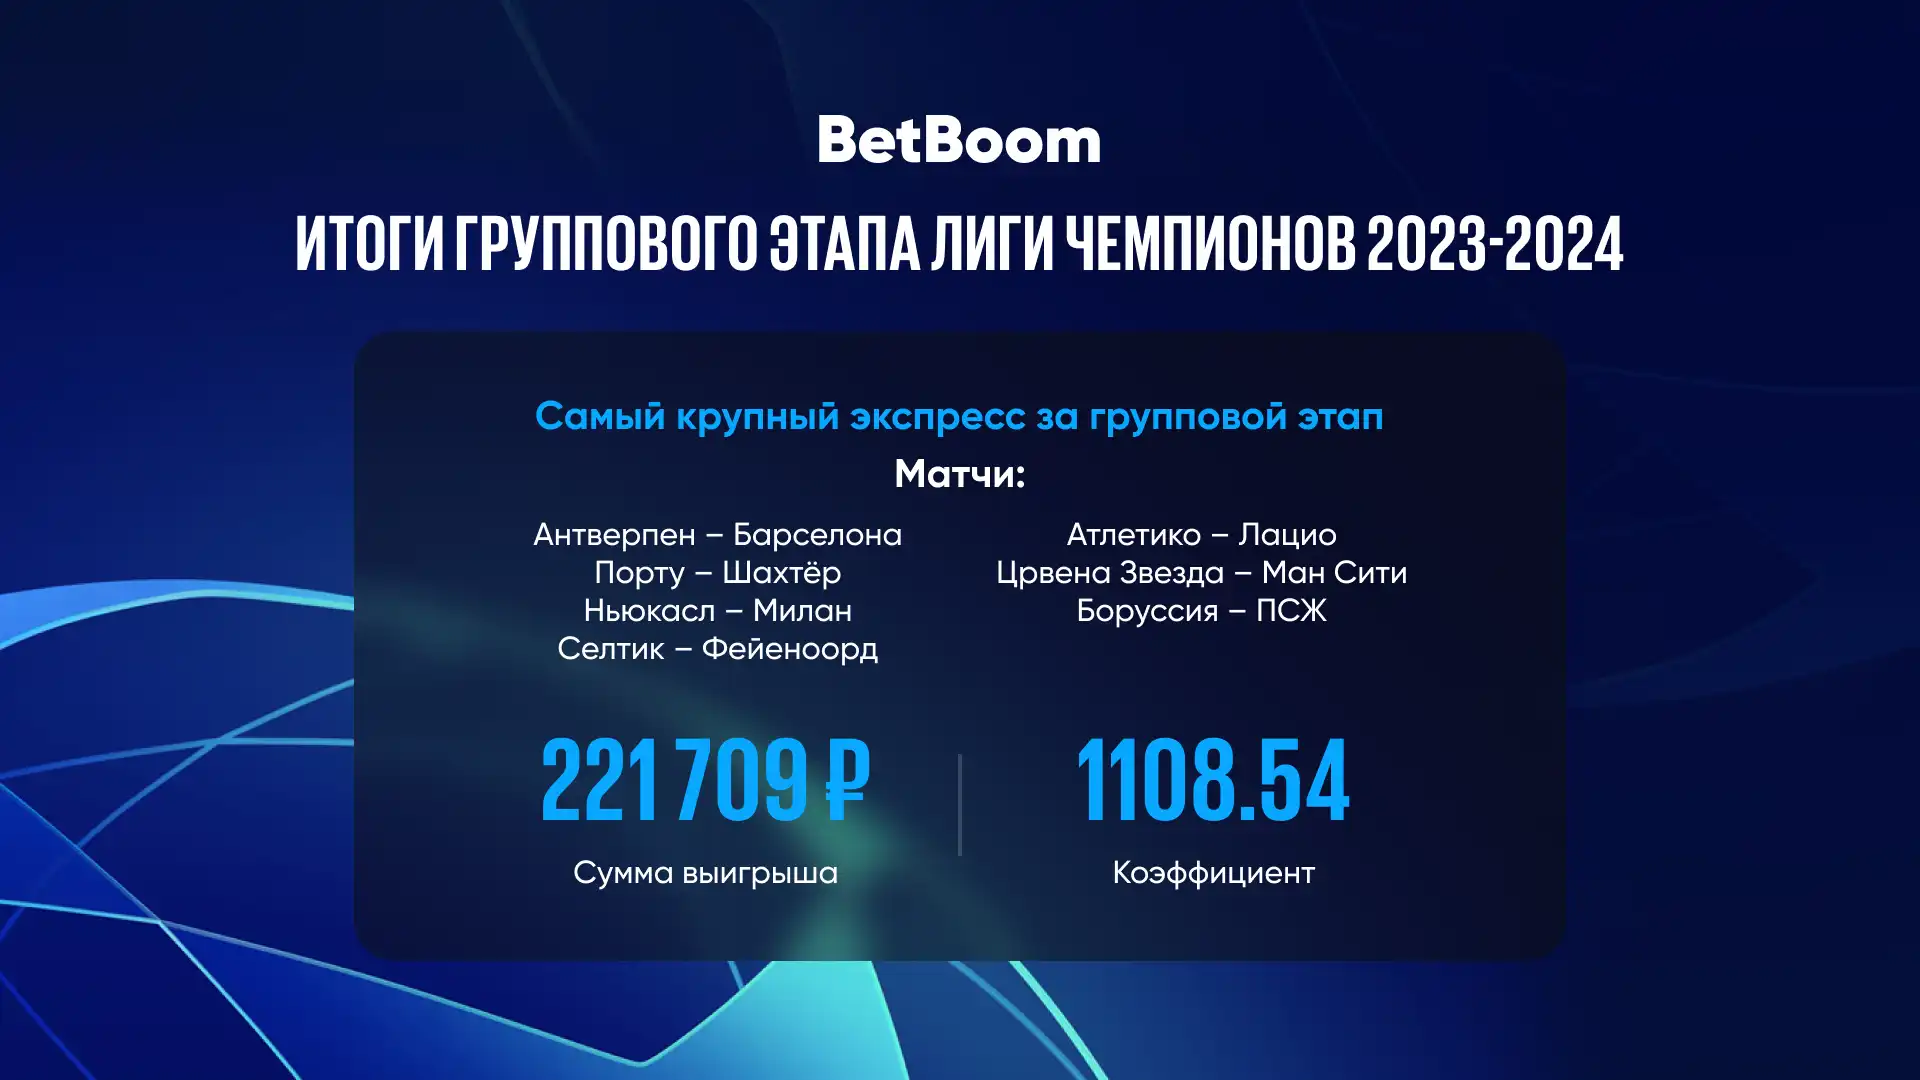 Ставки на групповом этапе Лиги чемпионов 2023/2024: BetBoom раскрывает результаты и выявляет основных претендентов на победу в турнире